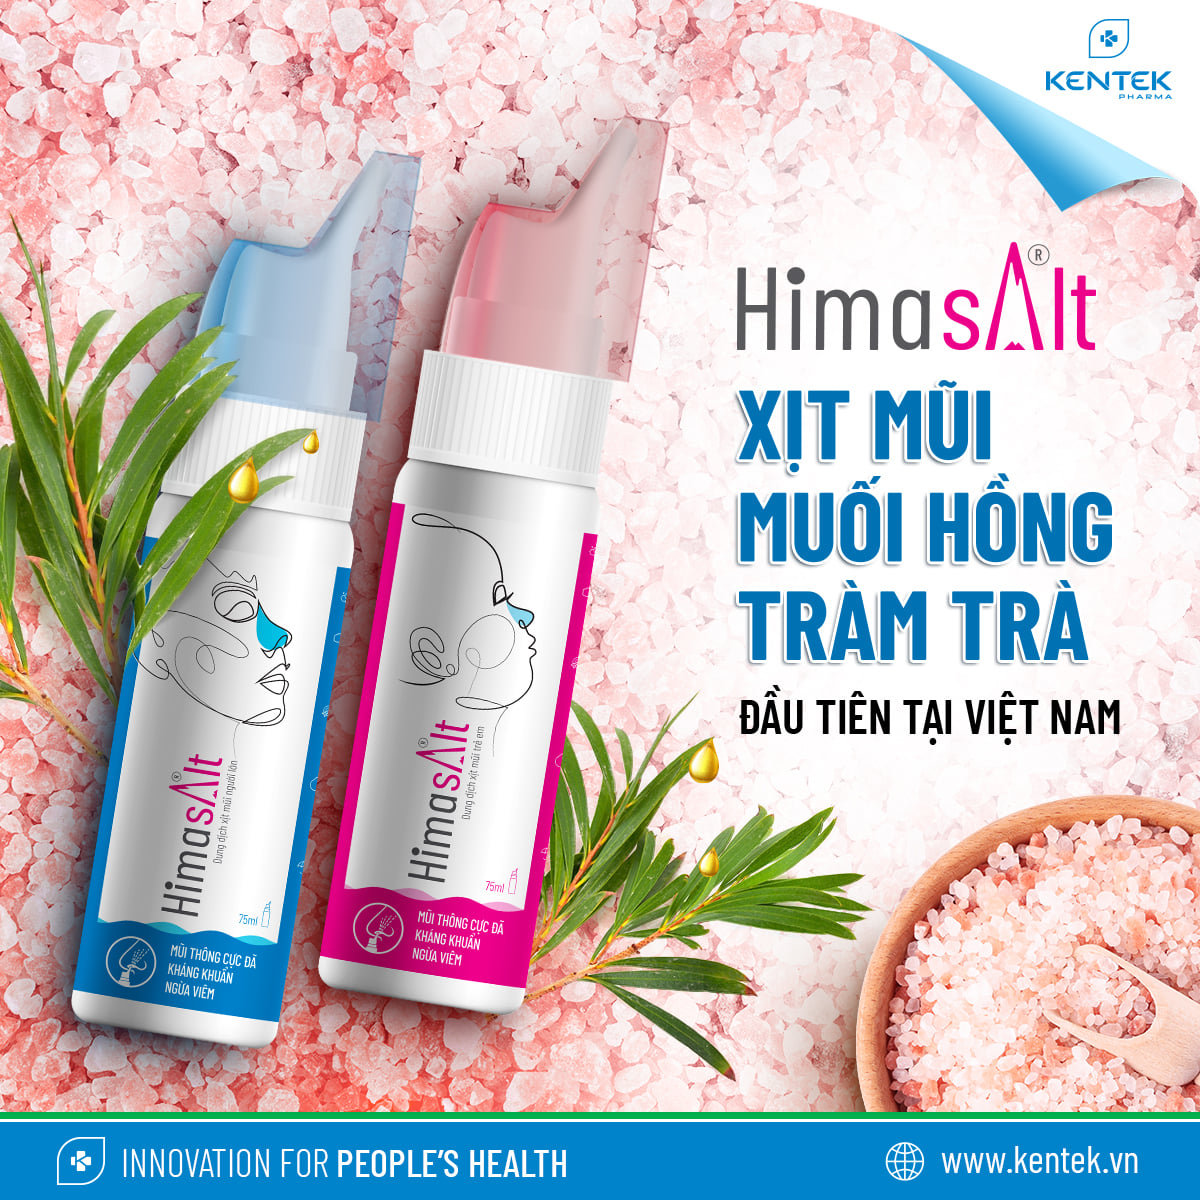 Hình ảnh sản phẩm Himasalt - xịt vệ sinh mũi từ muối hồng và tràm trà đầu tiên tại Việt Nam.